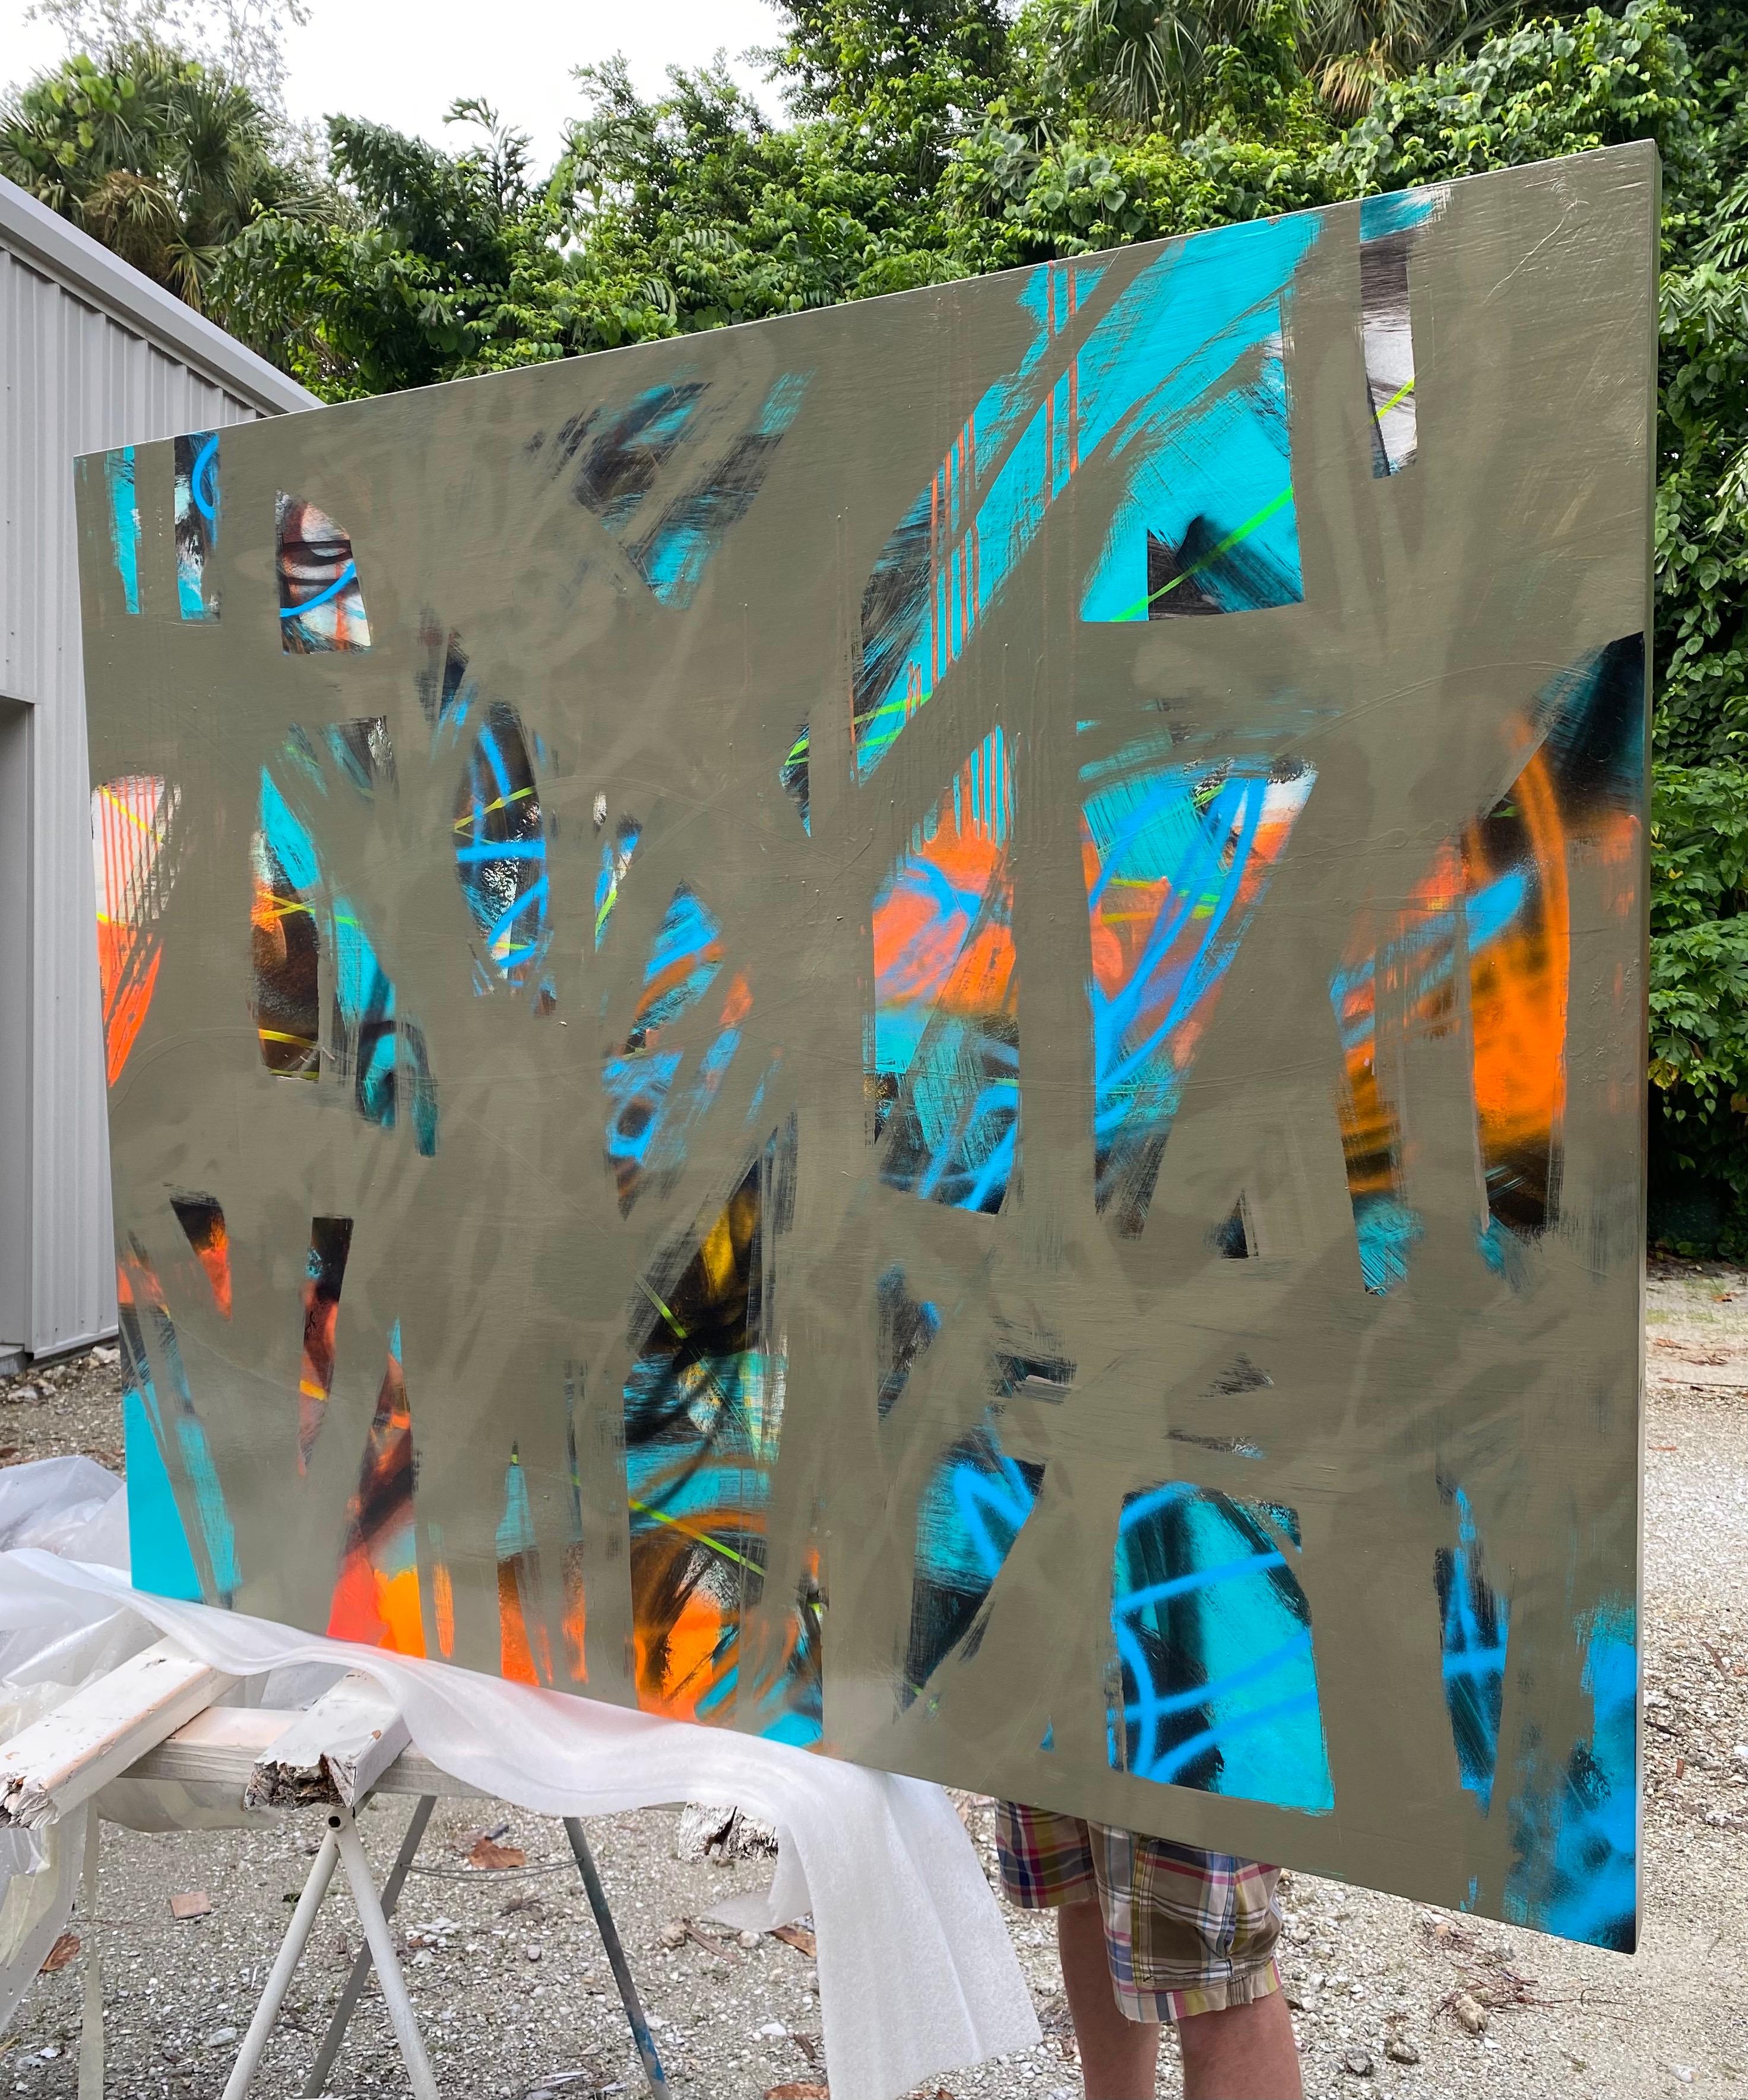 Öl und Sprühfarbe auf Holzplatte (Farben: teal schwarz orange hot pink blau)
Mirtha Moreno
Die abstrakt-expressionistische Künstlerin Mirtha Moreno wurde in den späten 70er Jahren in Havanna, Kuba, geboren, einer Zeit, die von religiöser und